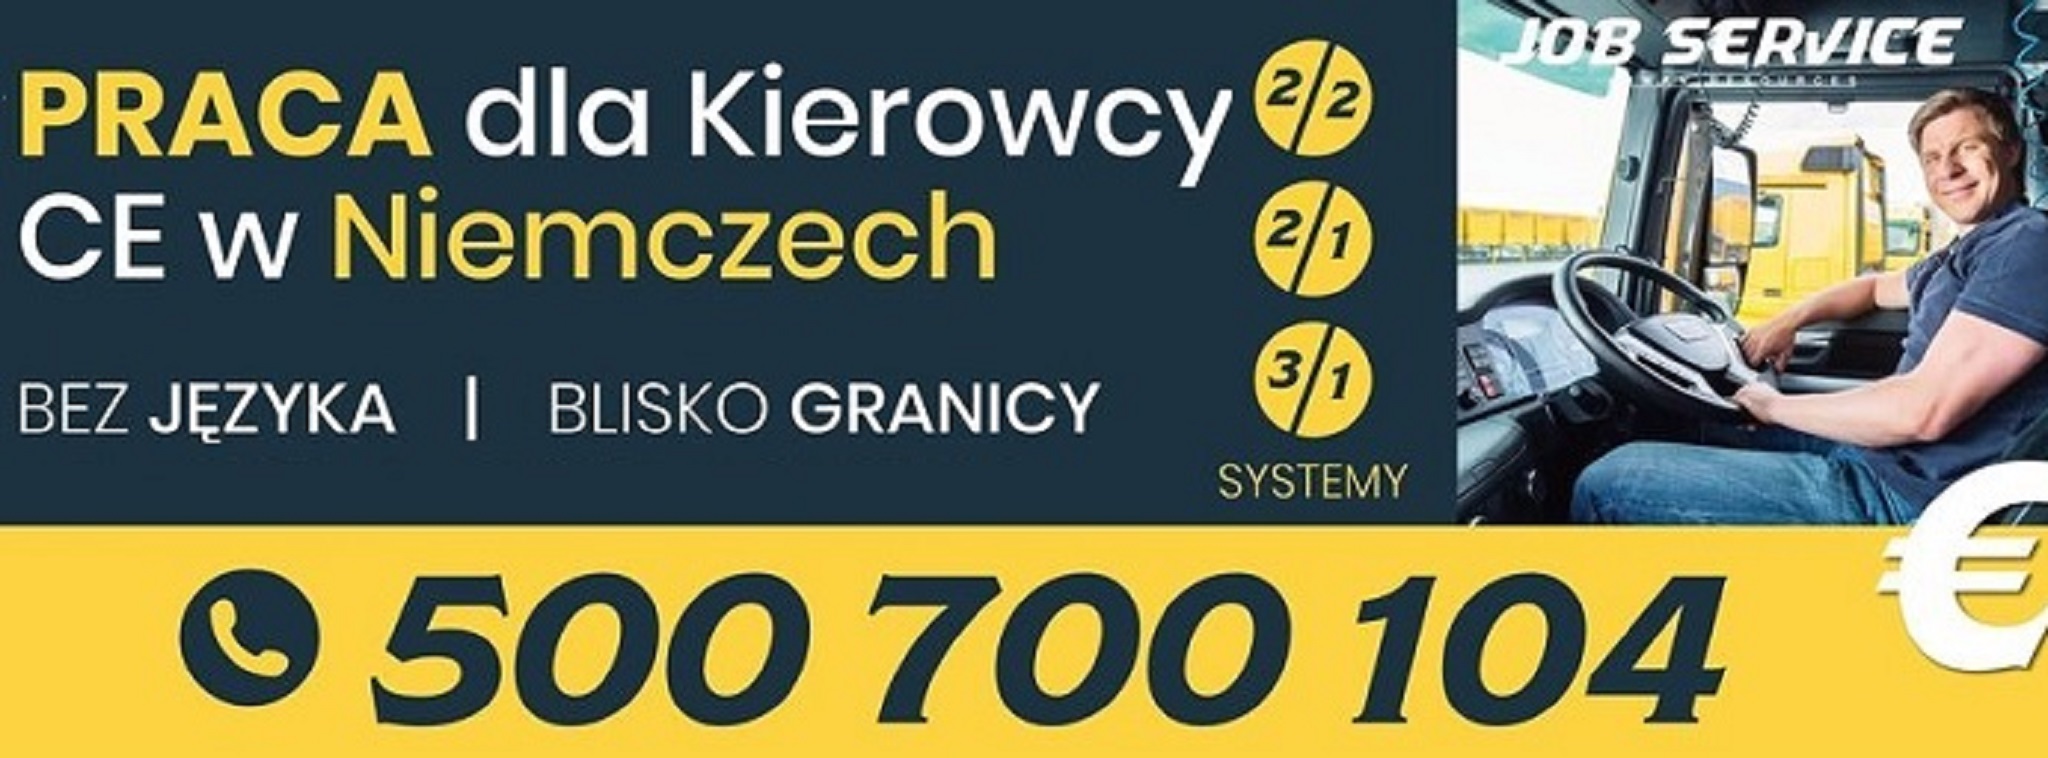 Praca Kierowca C+E, system 2/2, tandem/bdf Kraków - GoWork.pl